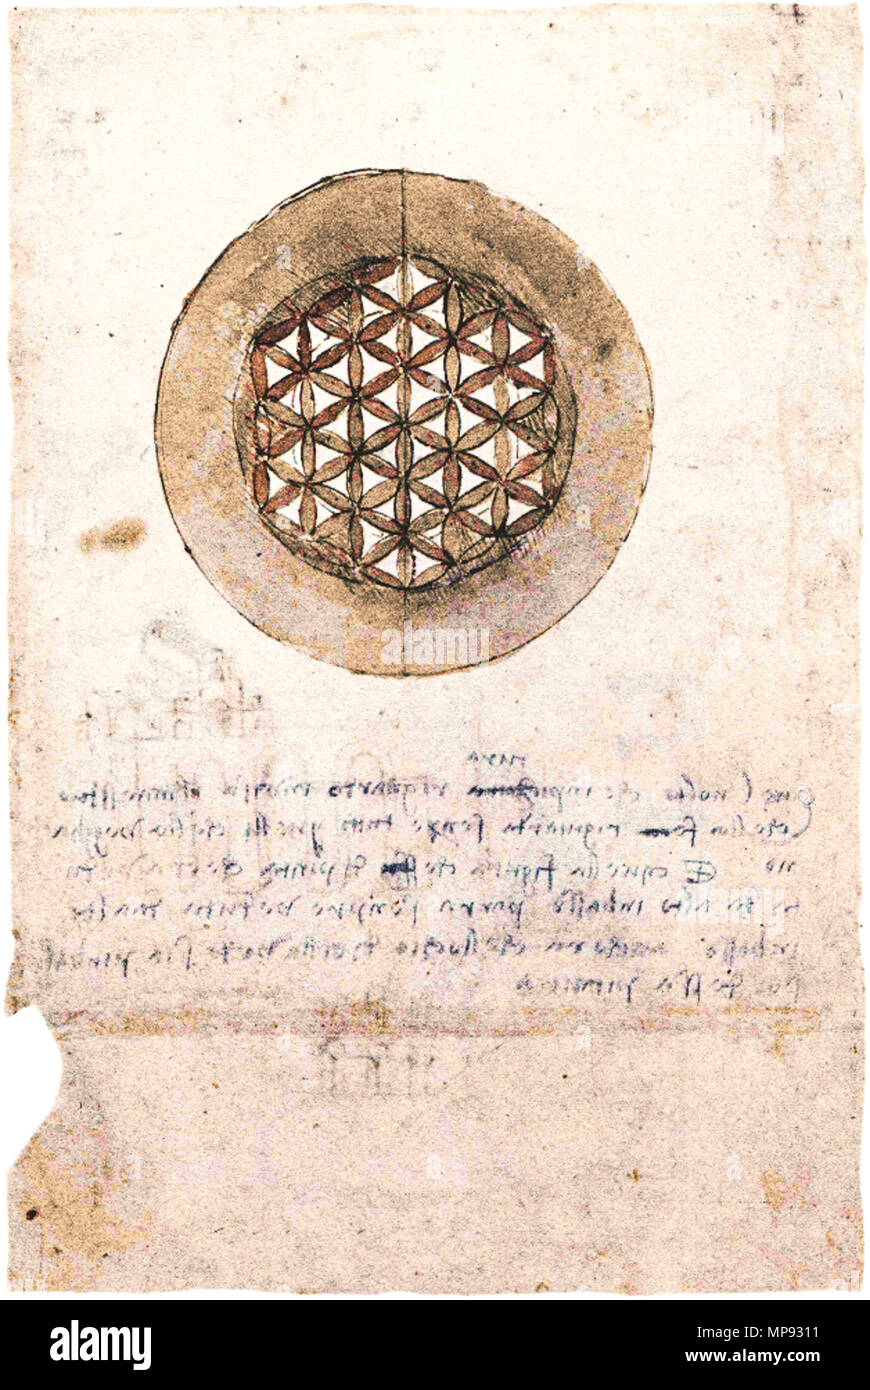 Inglese: questa è una foto di uno di Leonardo da Vinci i disegni di  strutture geometriche legate alla struttura ornamentale oggi denominata "Fiore  della Vita". Testo in italiano recita: Quel volto